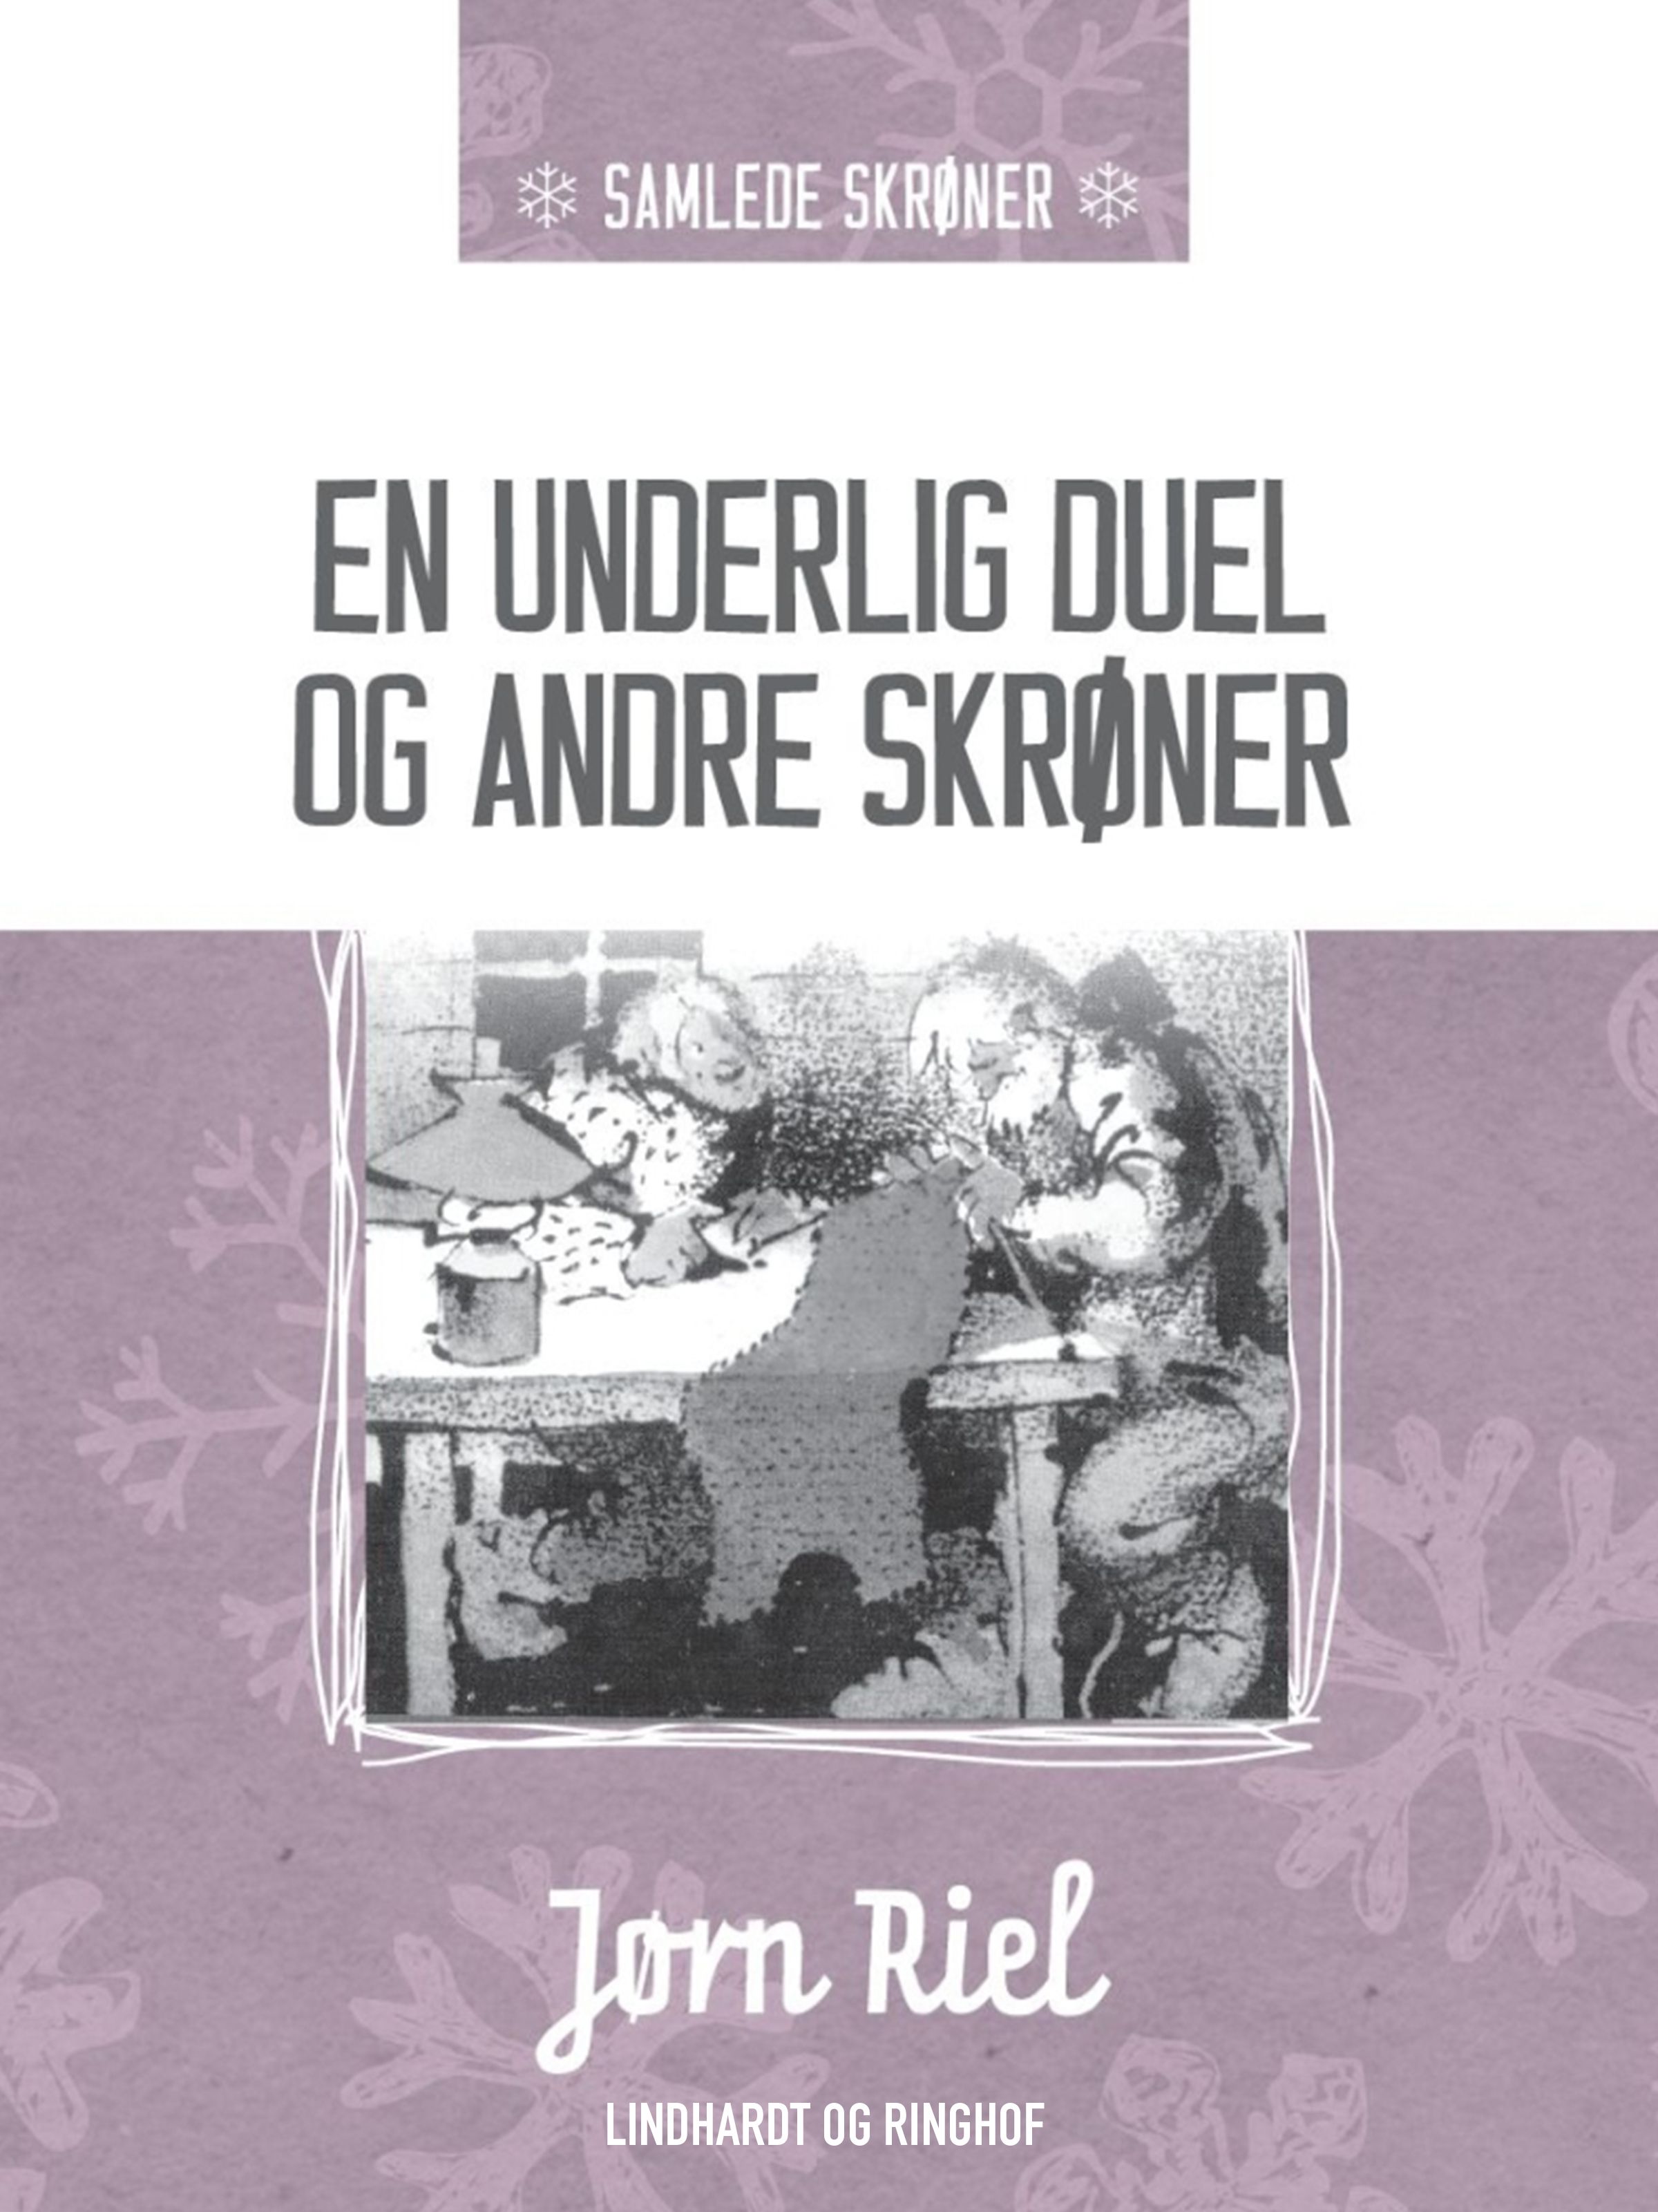 En underlig duel og andre skrøner, e-bog af Jørn Riel